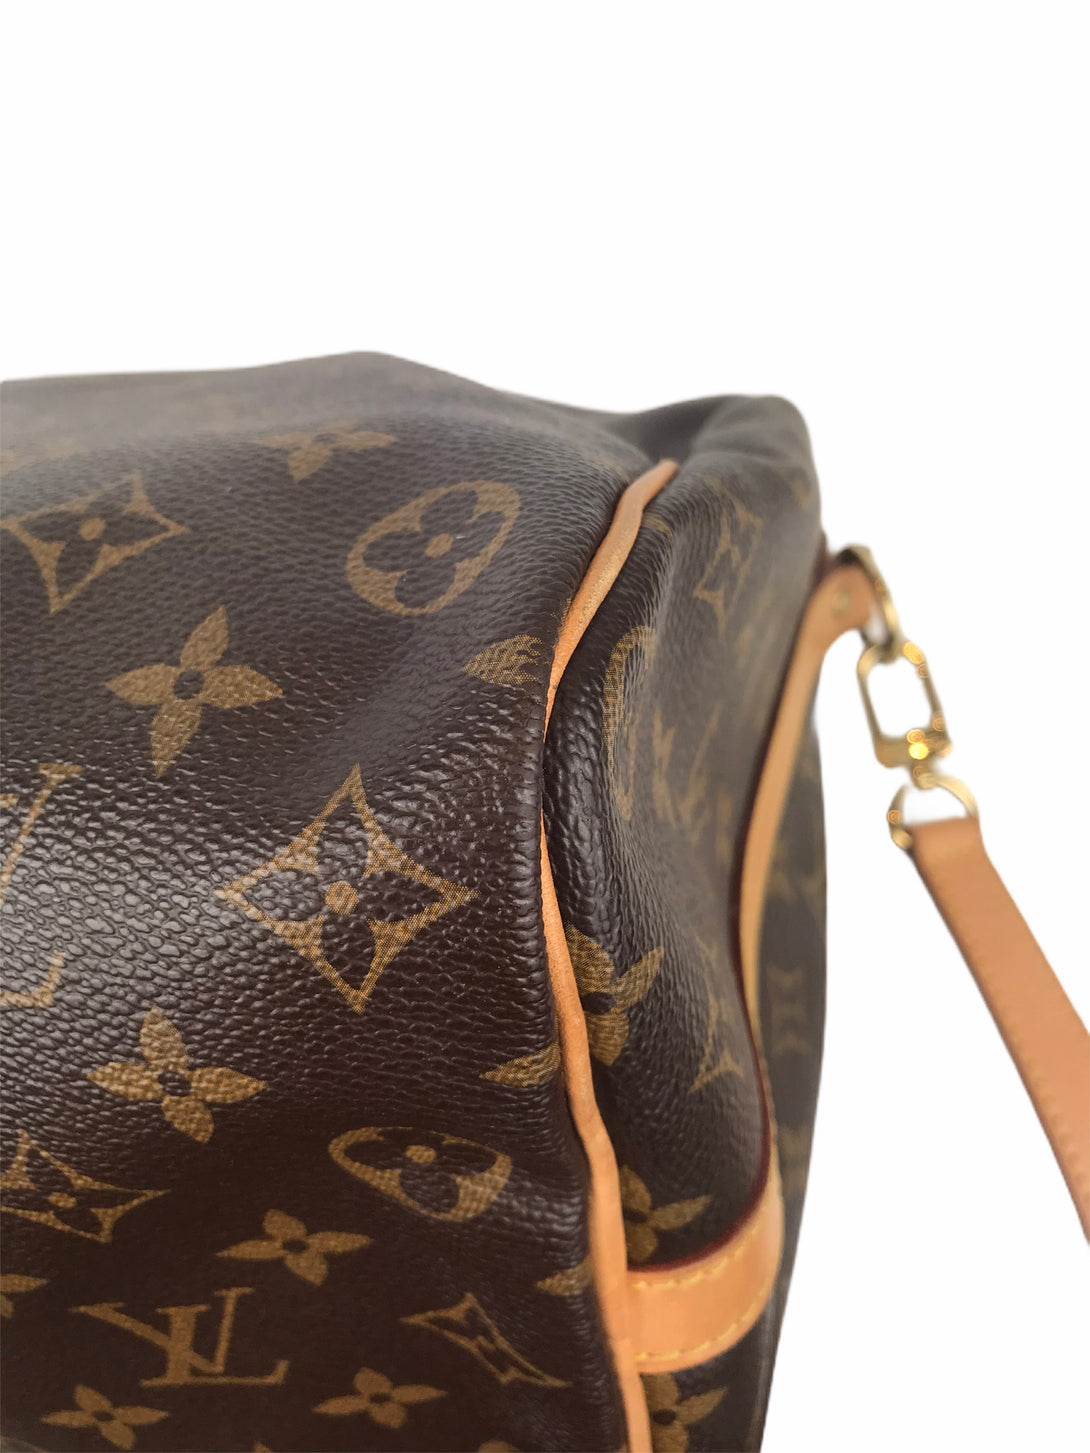 Louis Vuitton Monogram Speedy Bandouliere 35 - As Seen on Instagram 23/08/2020 - Siopaella Designer Exchange